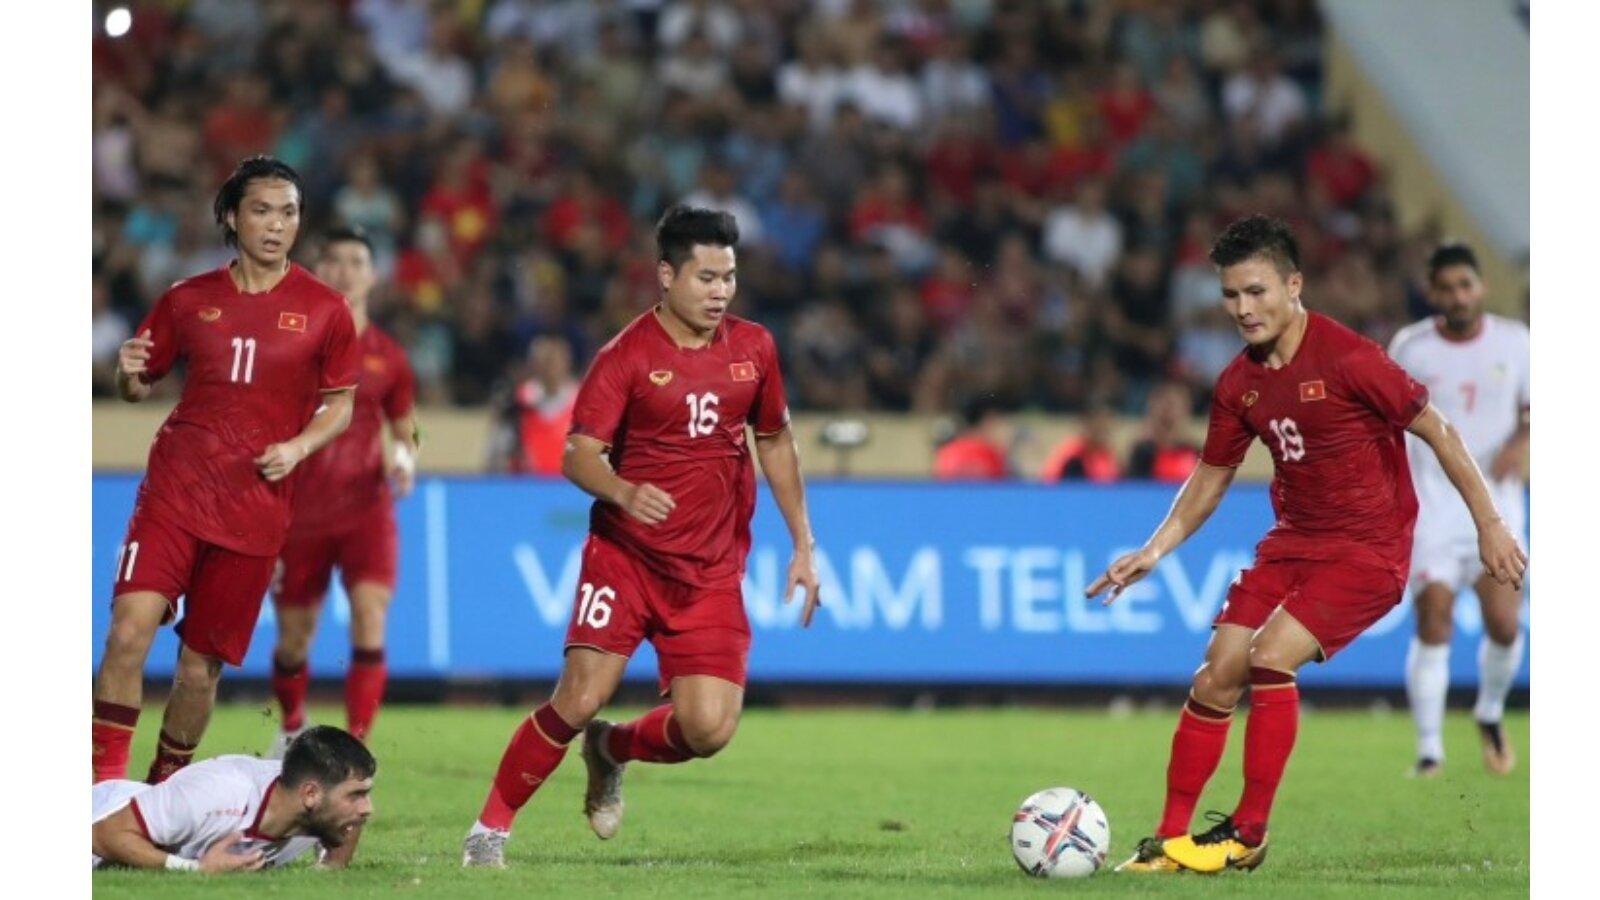 Đội tuyển Viêt Nam chuẩn bị kỹ lưỡng cho trận đấu (nguồn ảnh: Internet)